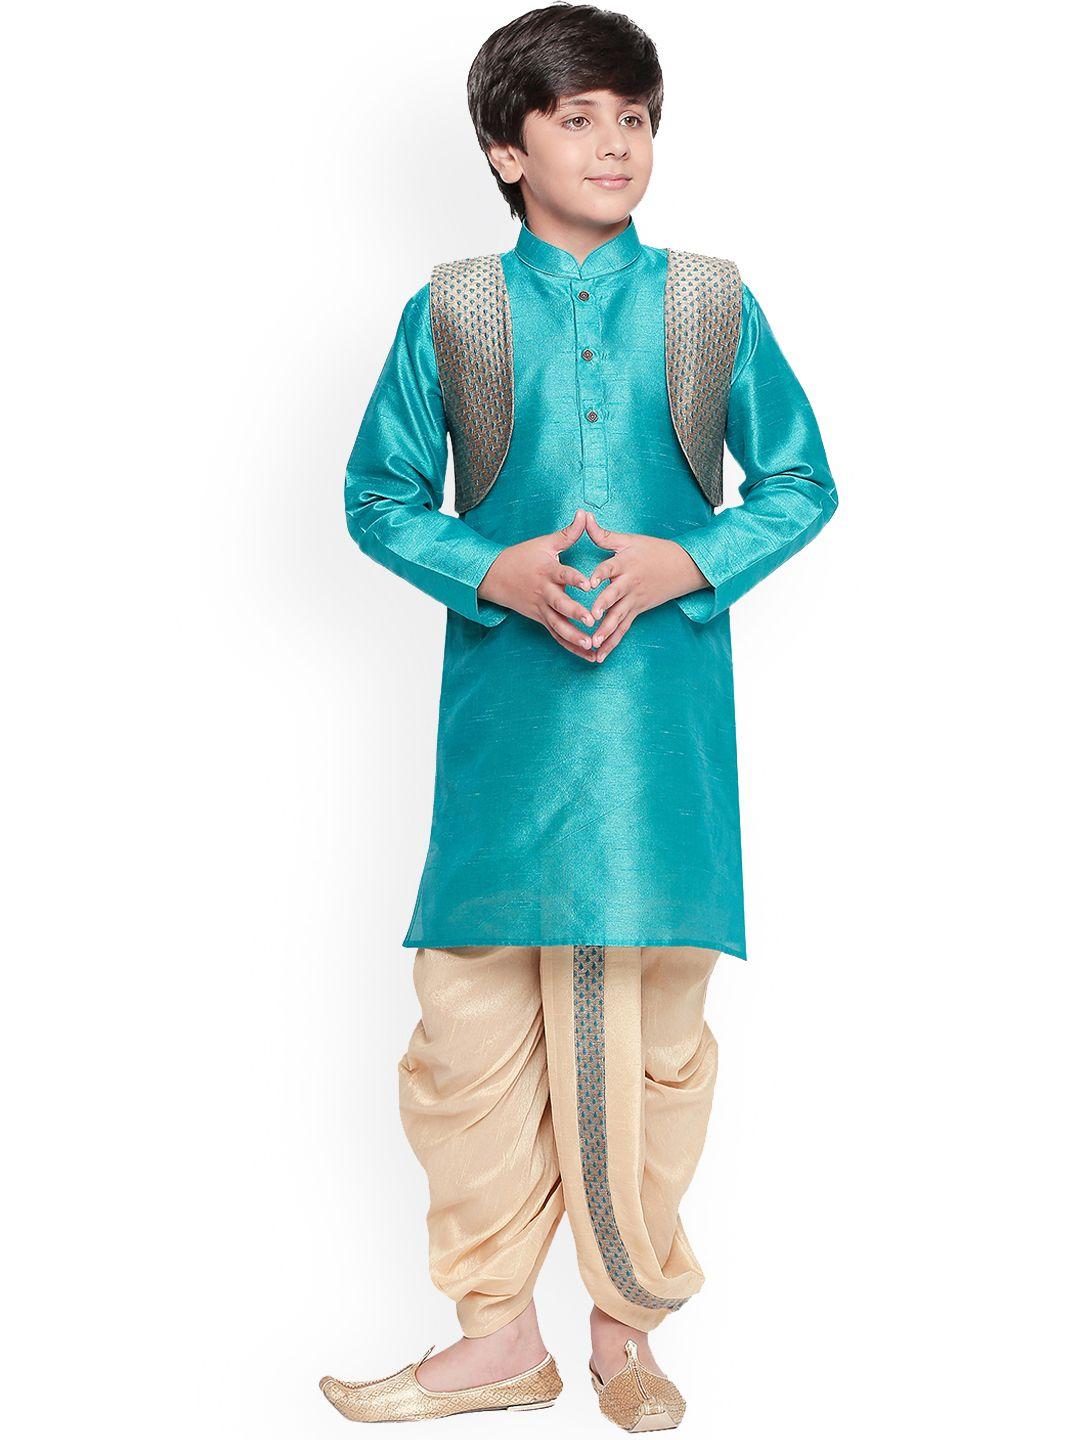 jeetethnics boys turquoise blue & gold-toned self design kurta set with jacket